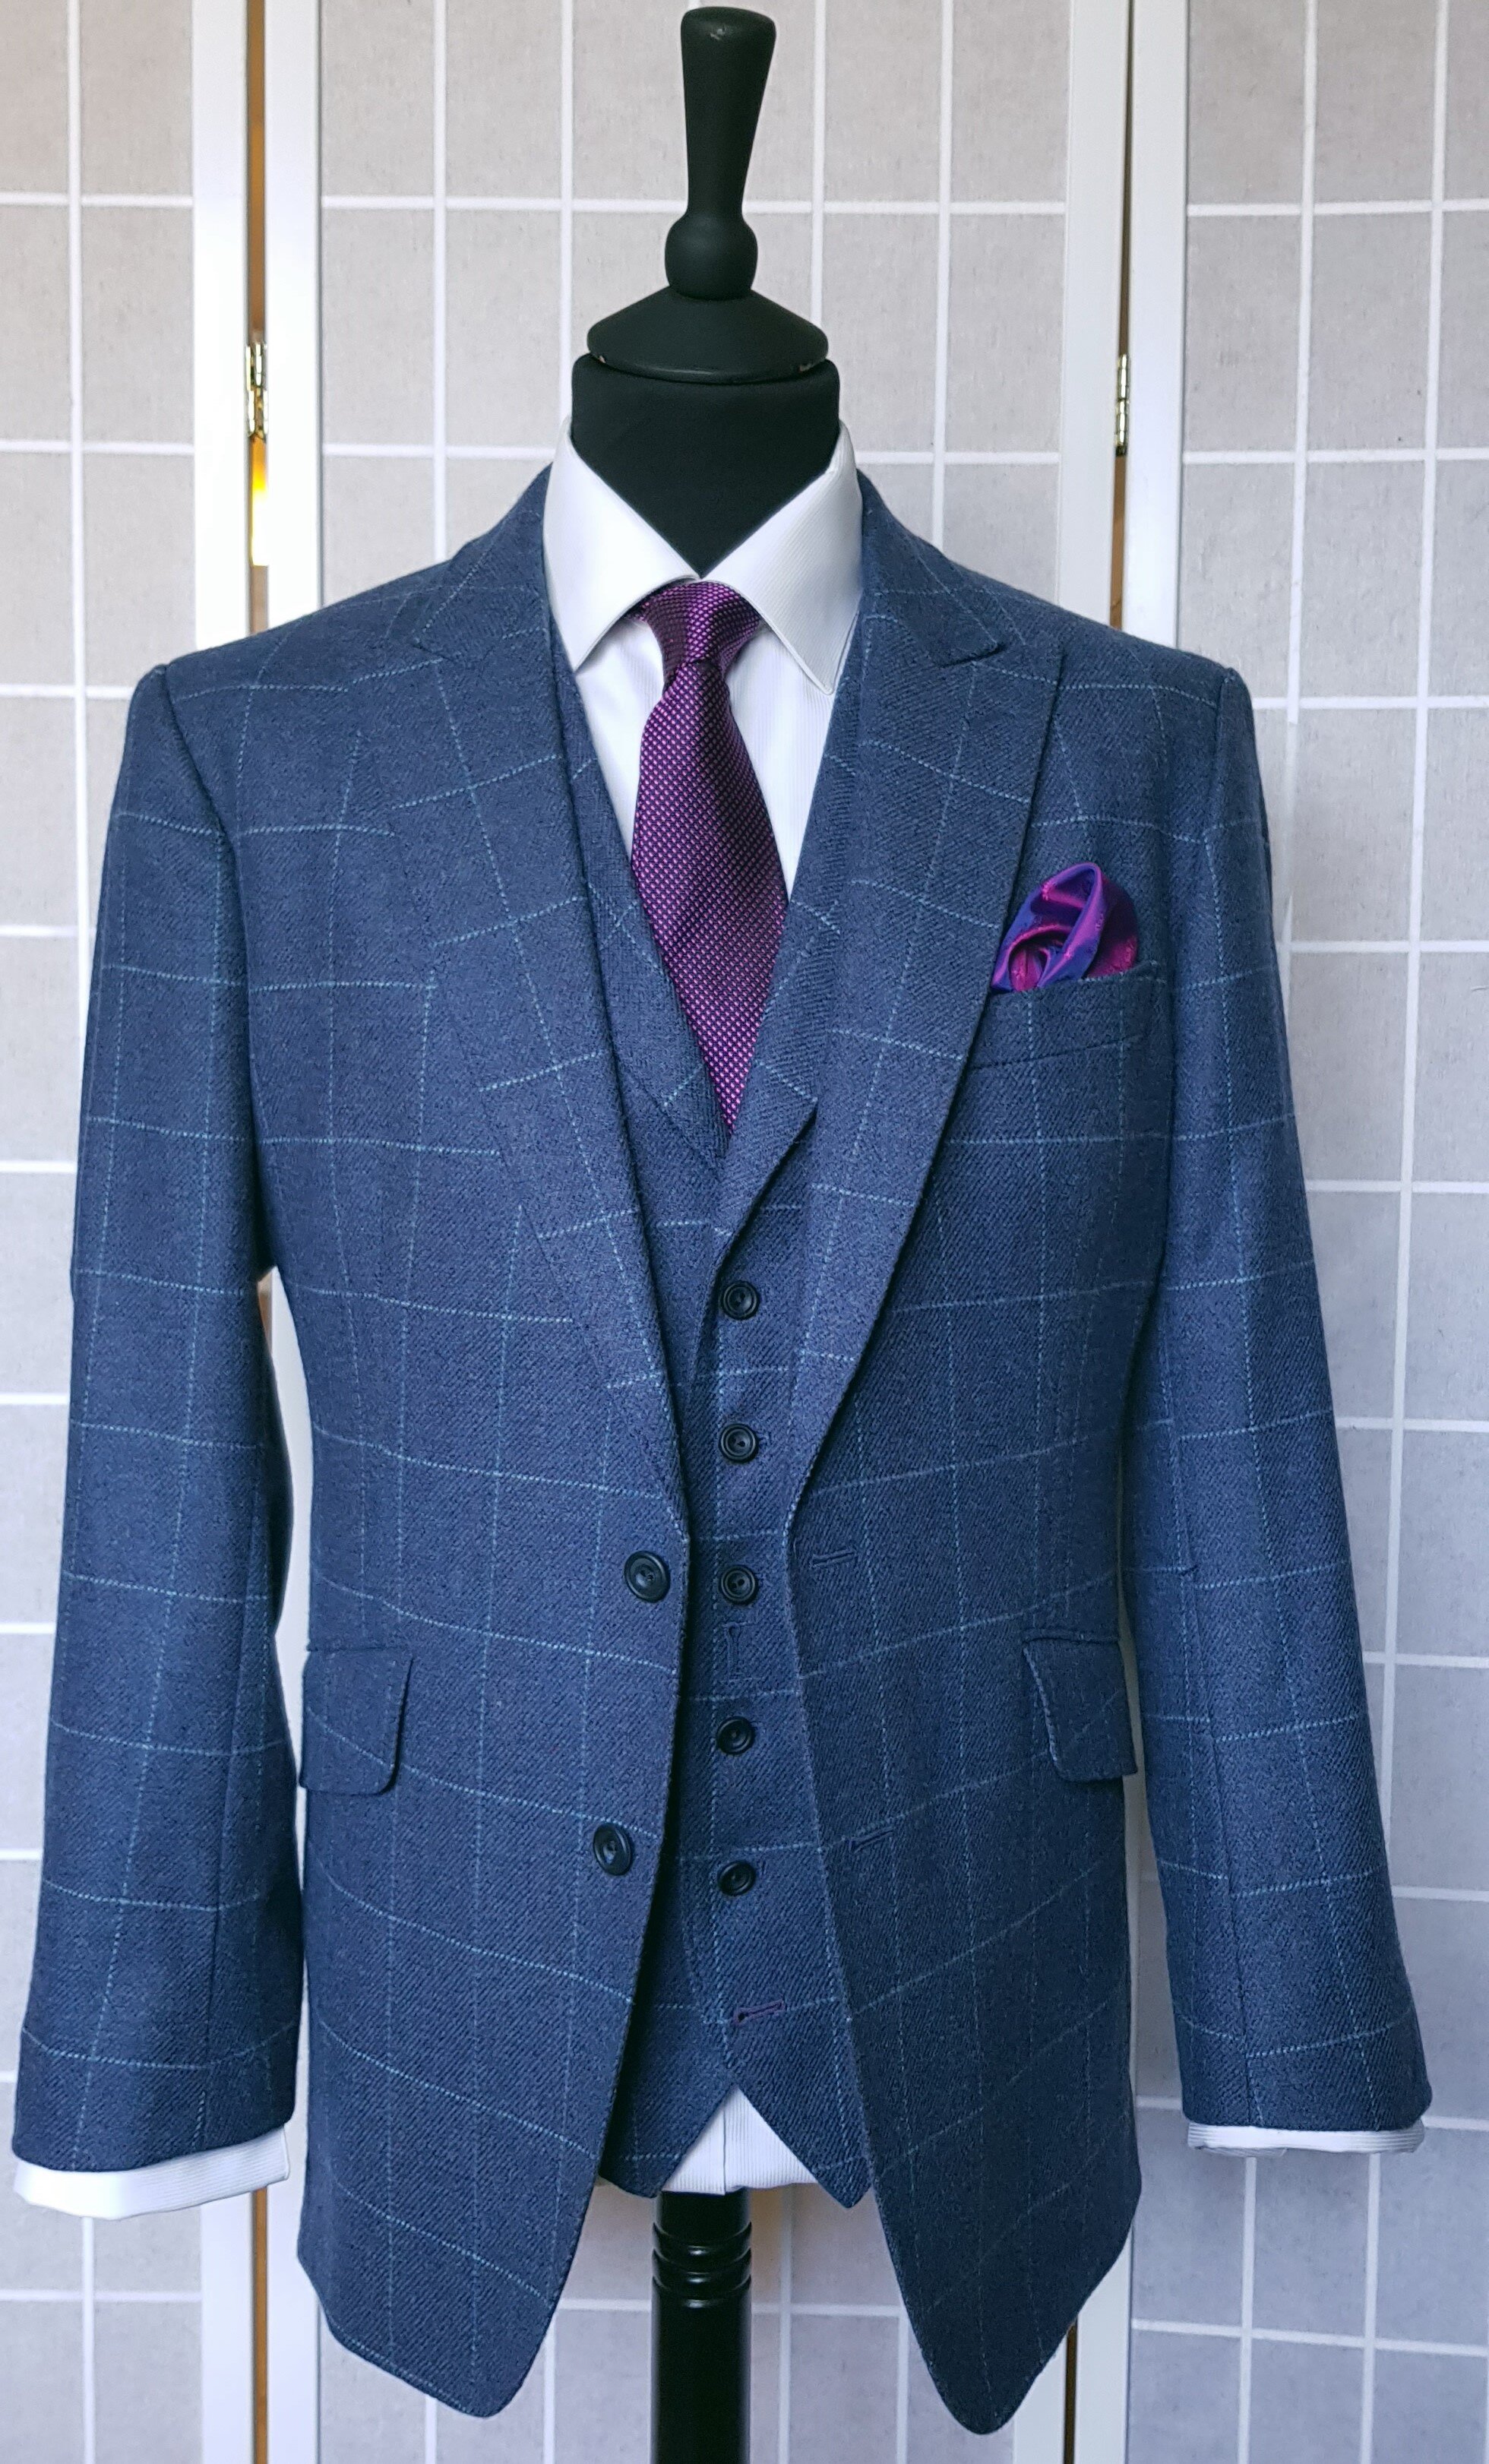 3 Piece suit in Blue Check Tweed (6).jpg